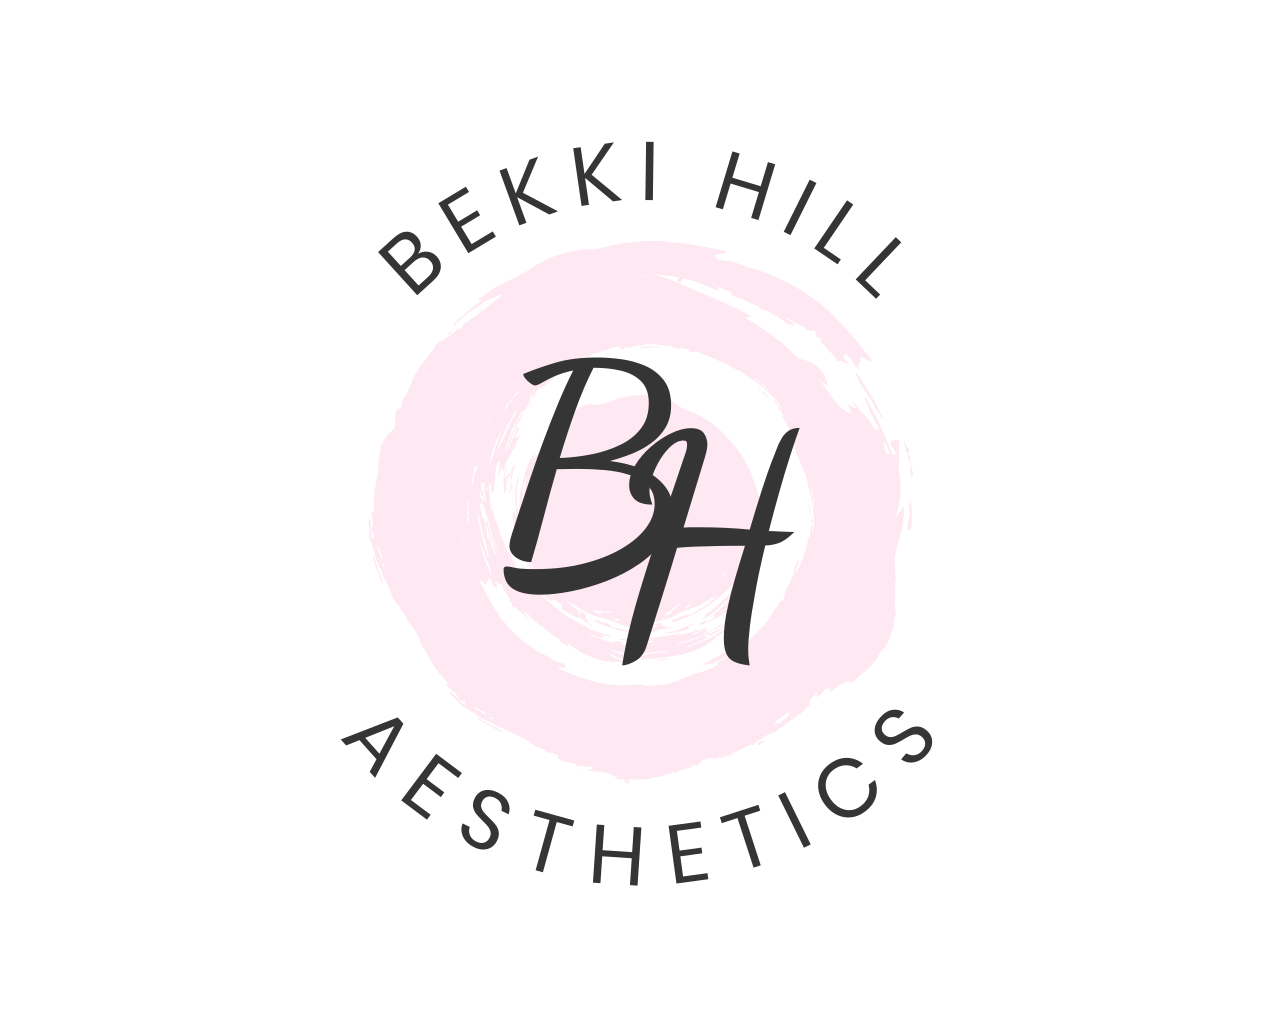 bekki hill registered nurse injector logo